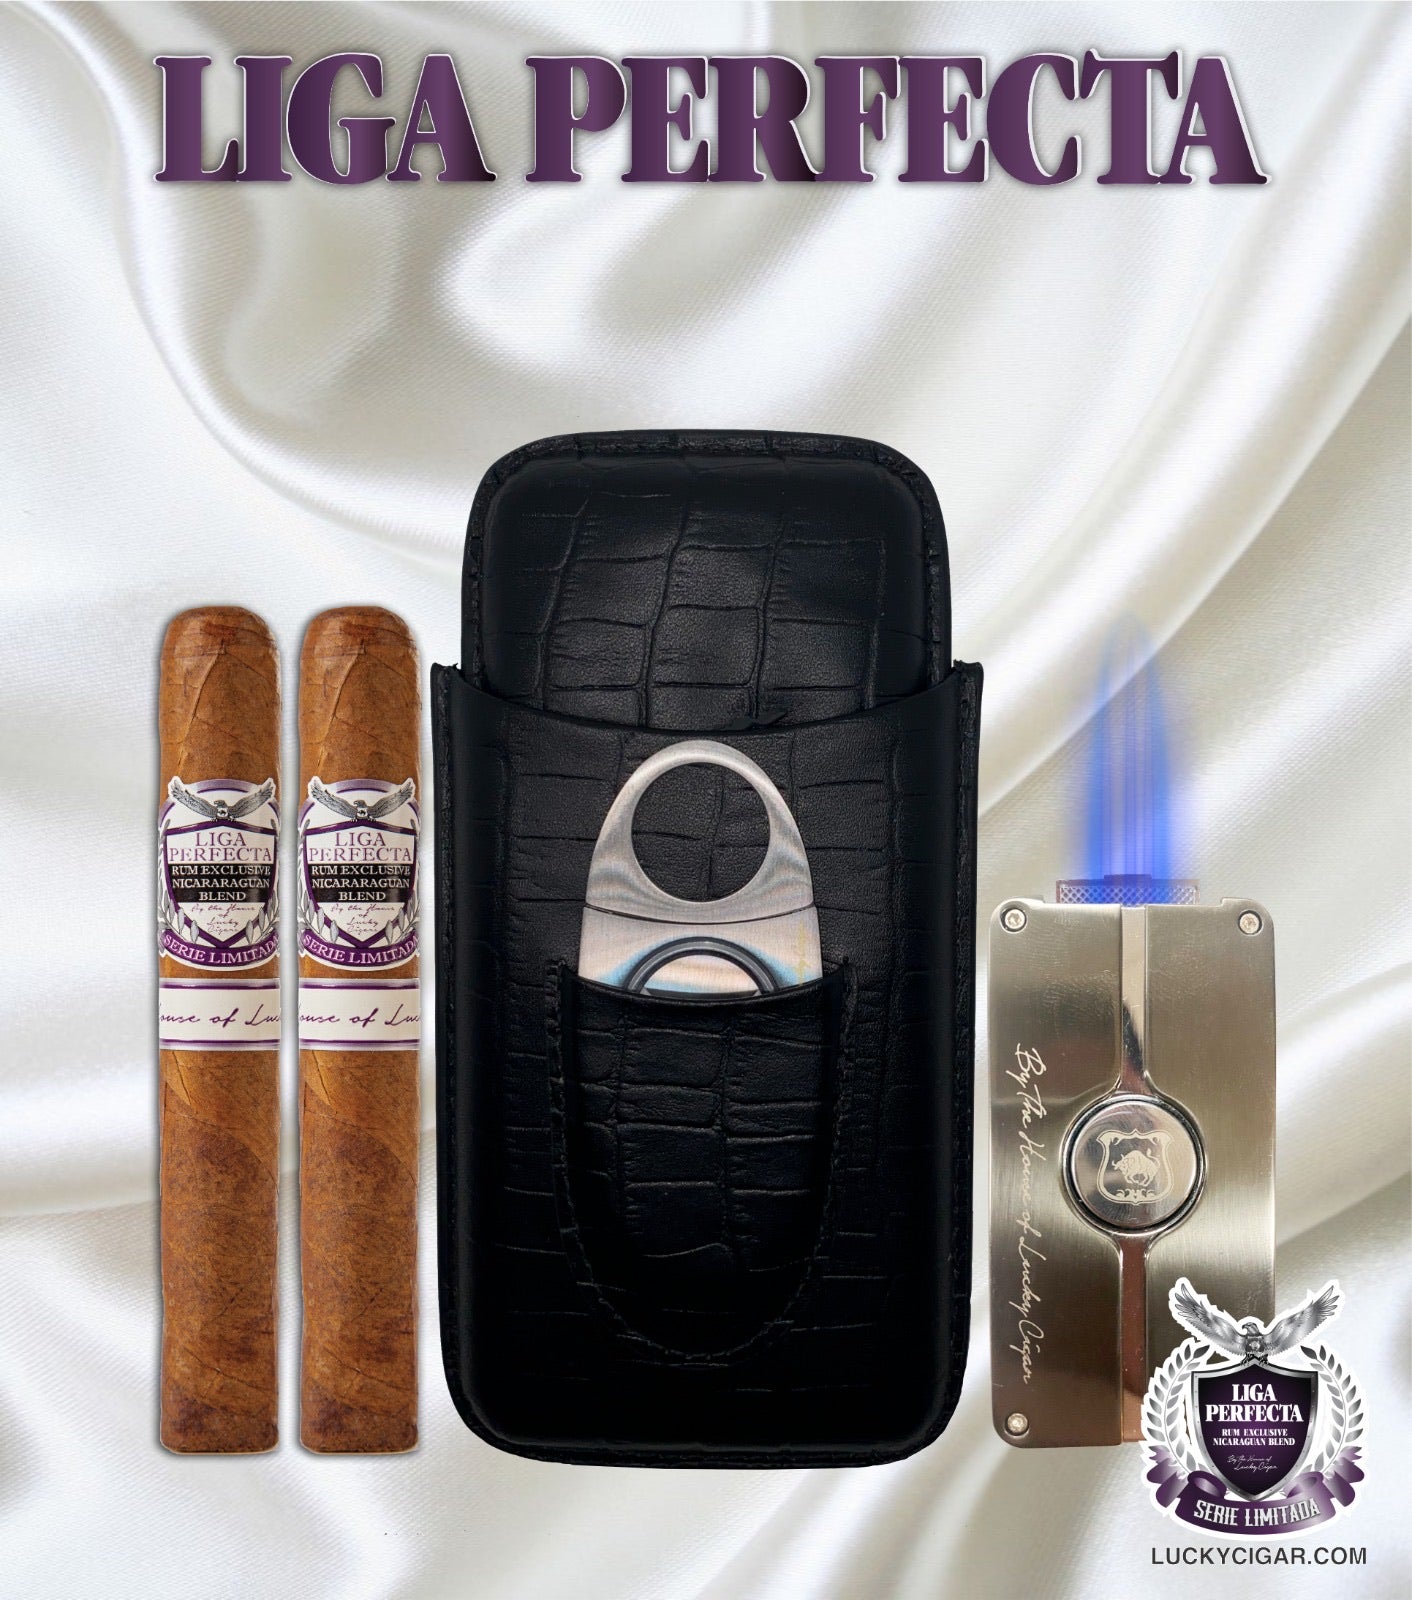 Leather set liga perfecta set includes: